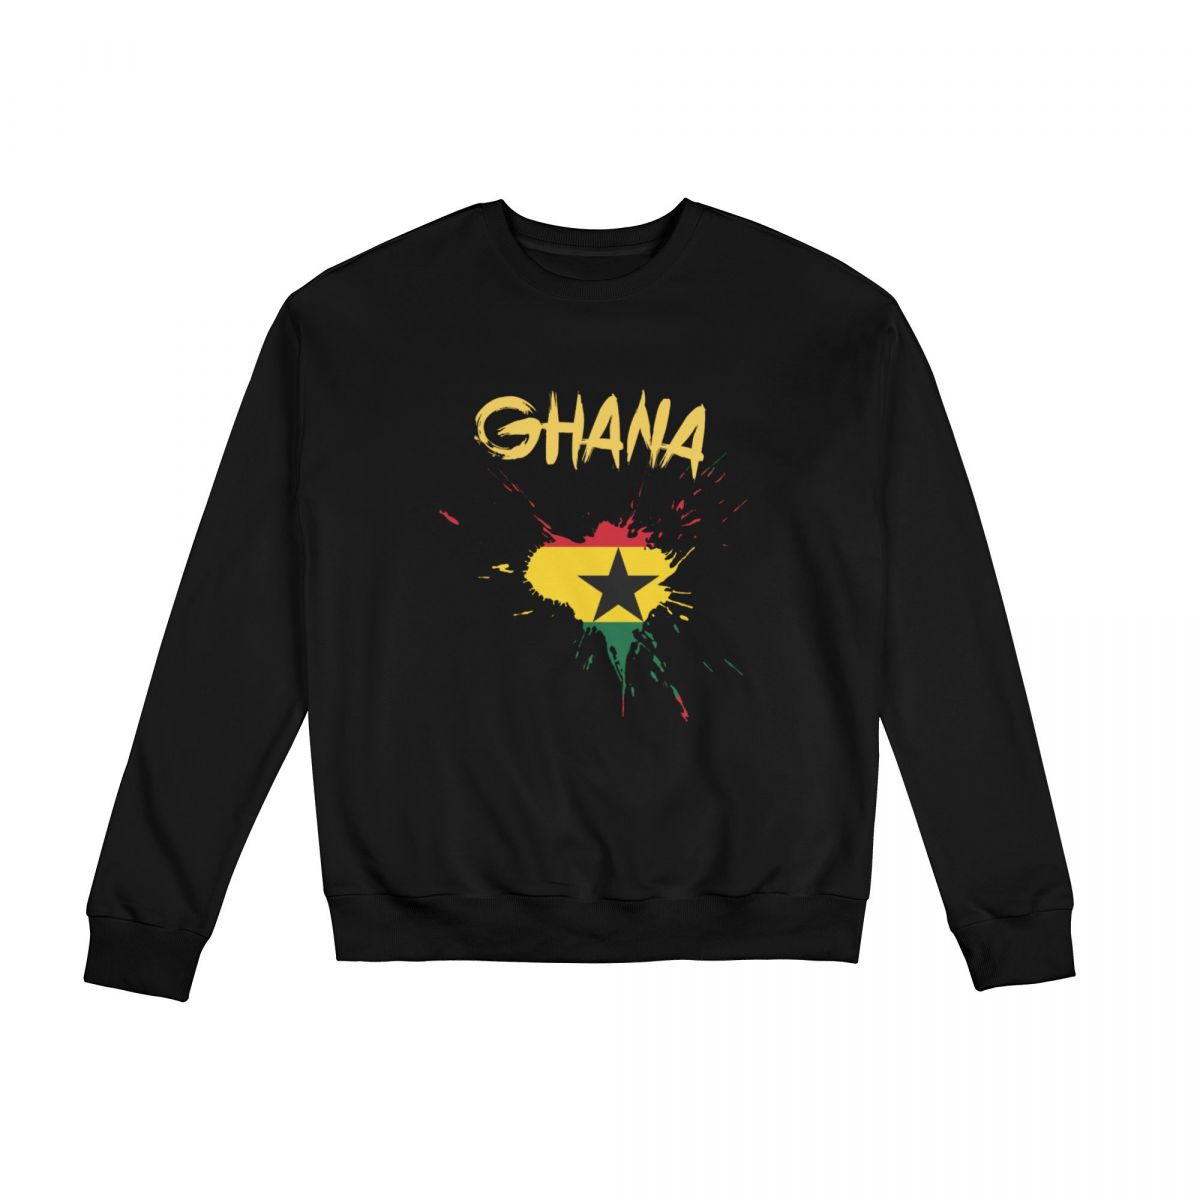 Ghana Ink Spatter Crew Neck Sweatshirt